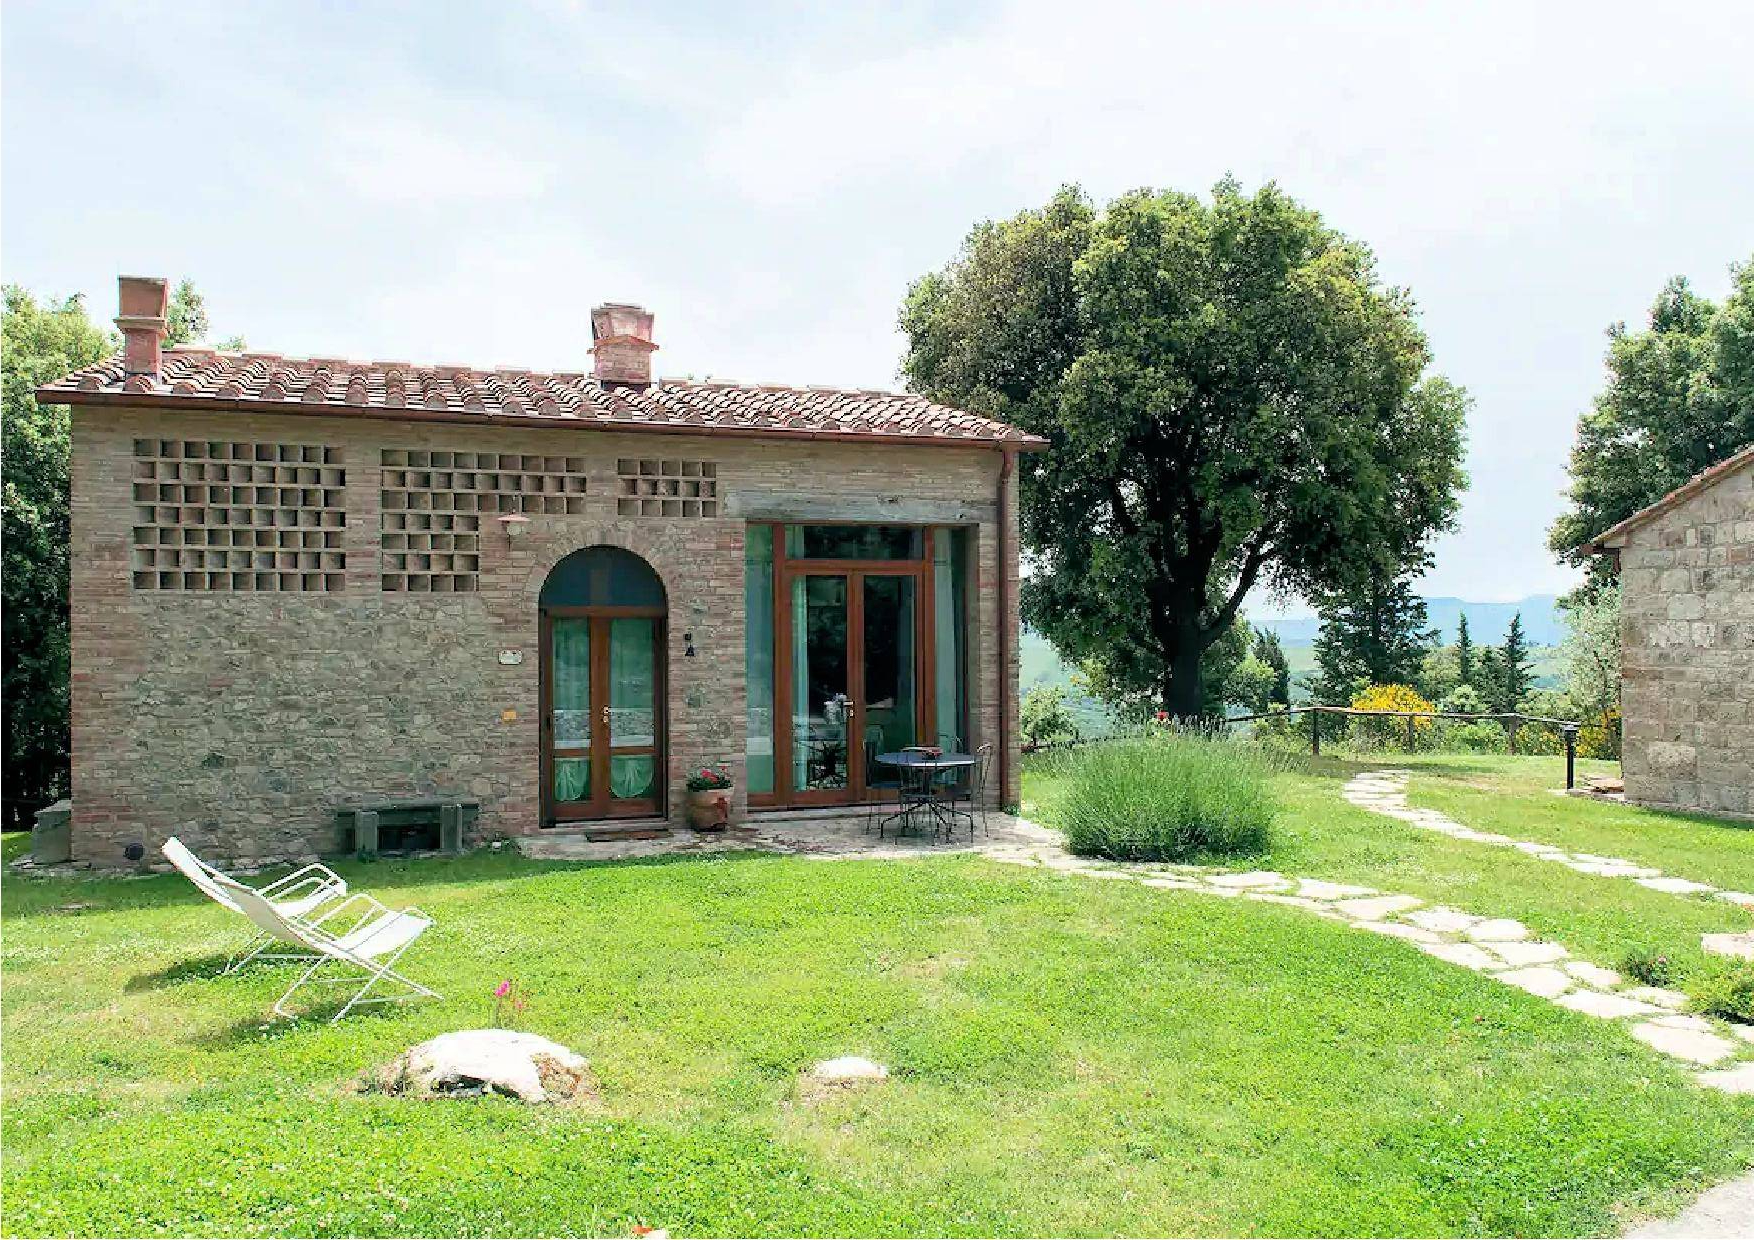 Rustico / Casale in vendita a Gambassi Terme